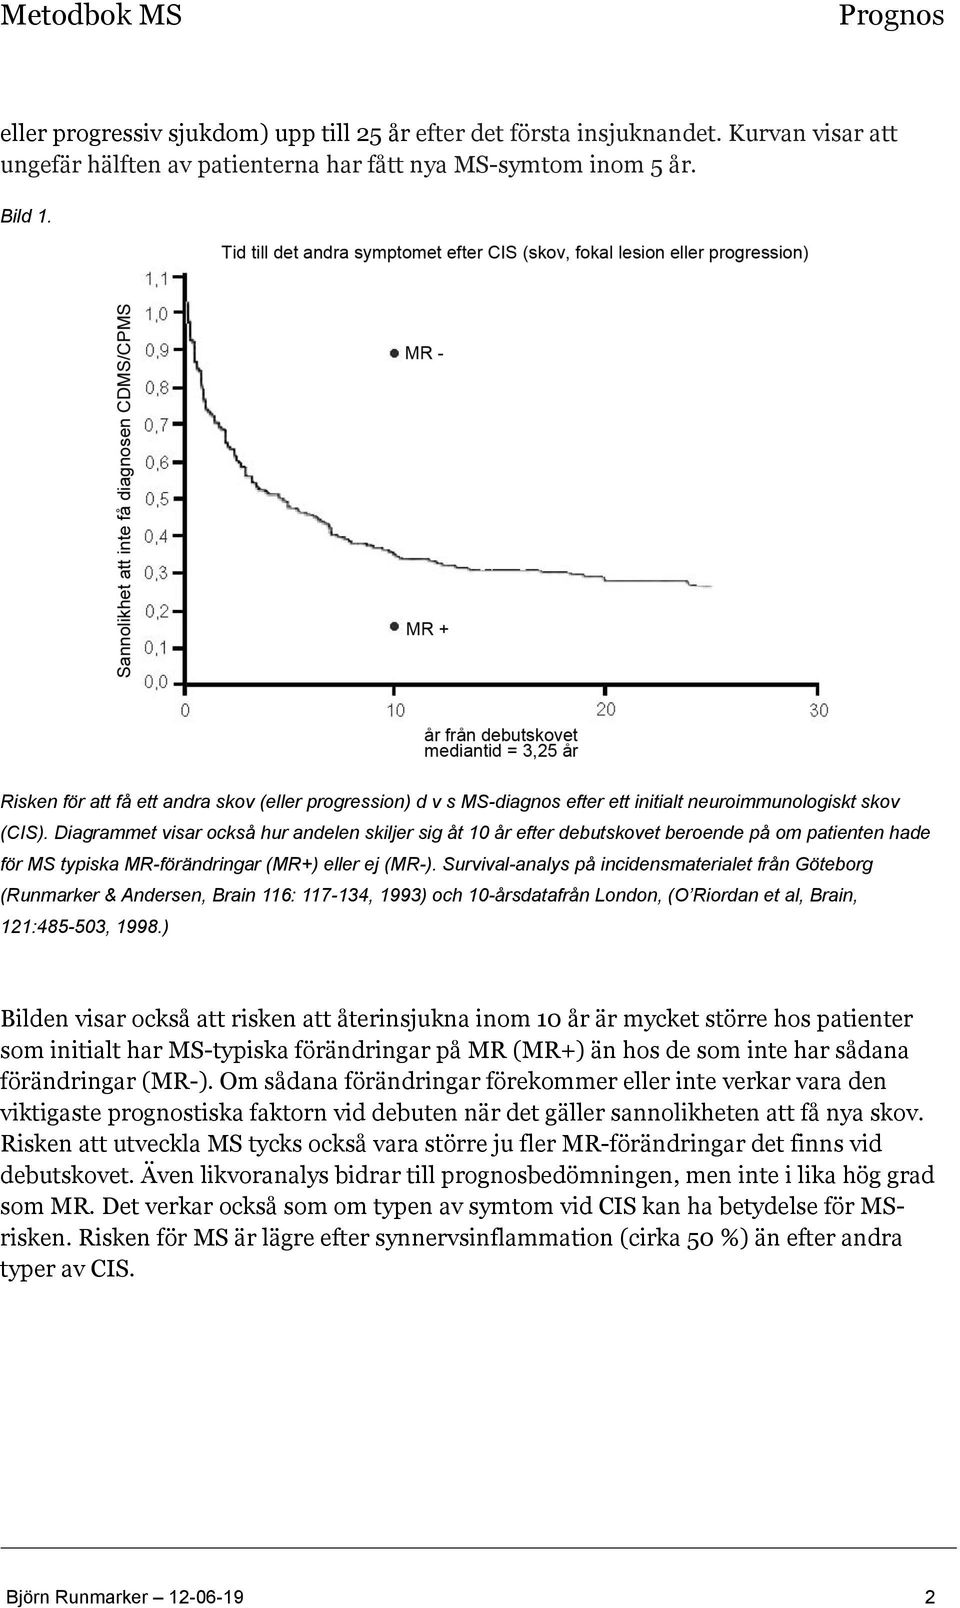 Diagrammet visar också hur andelen skiljer sig åt 10 år efter debutskovet beroende på om patienten hade för MS typiska MR-förändringar (MR+) eller ej (MR-).